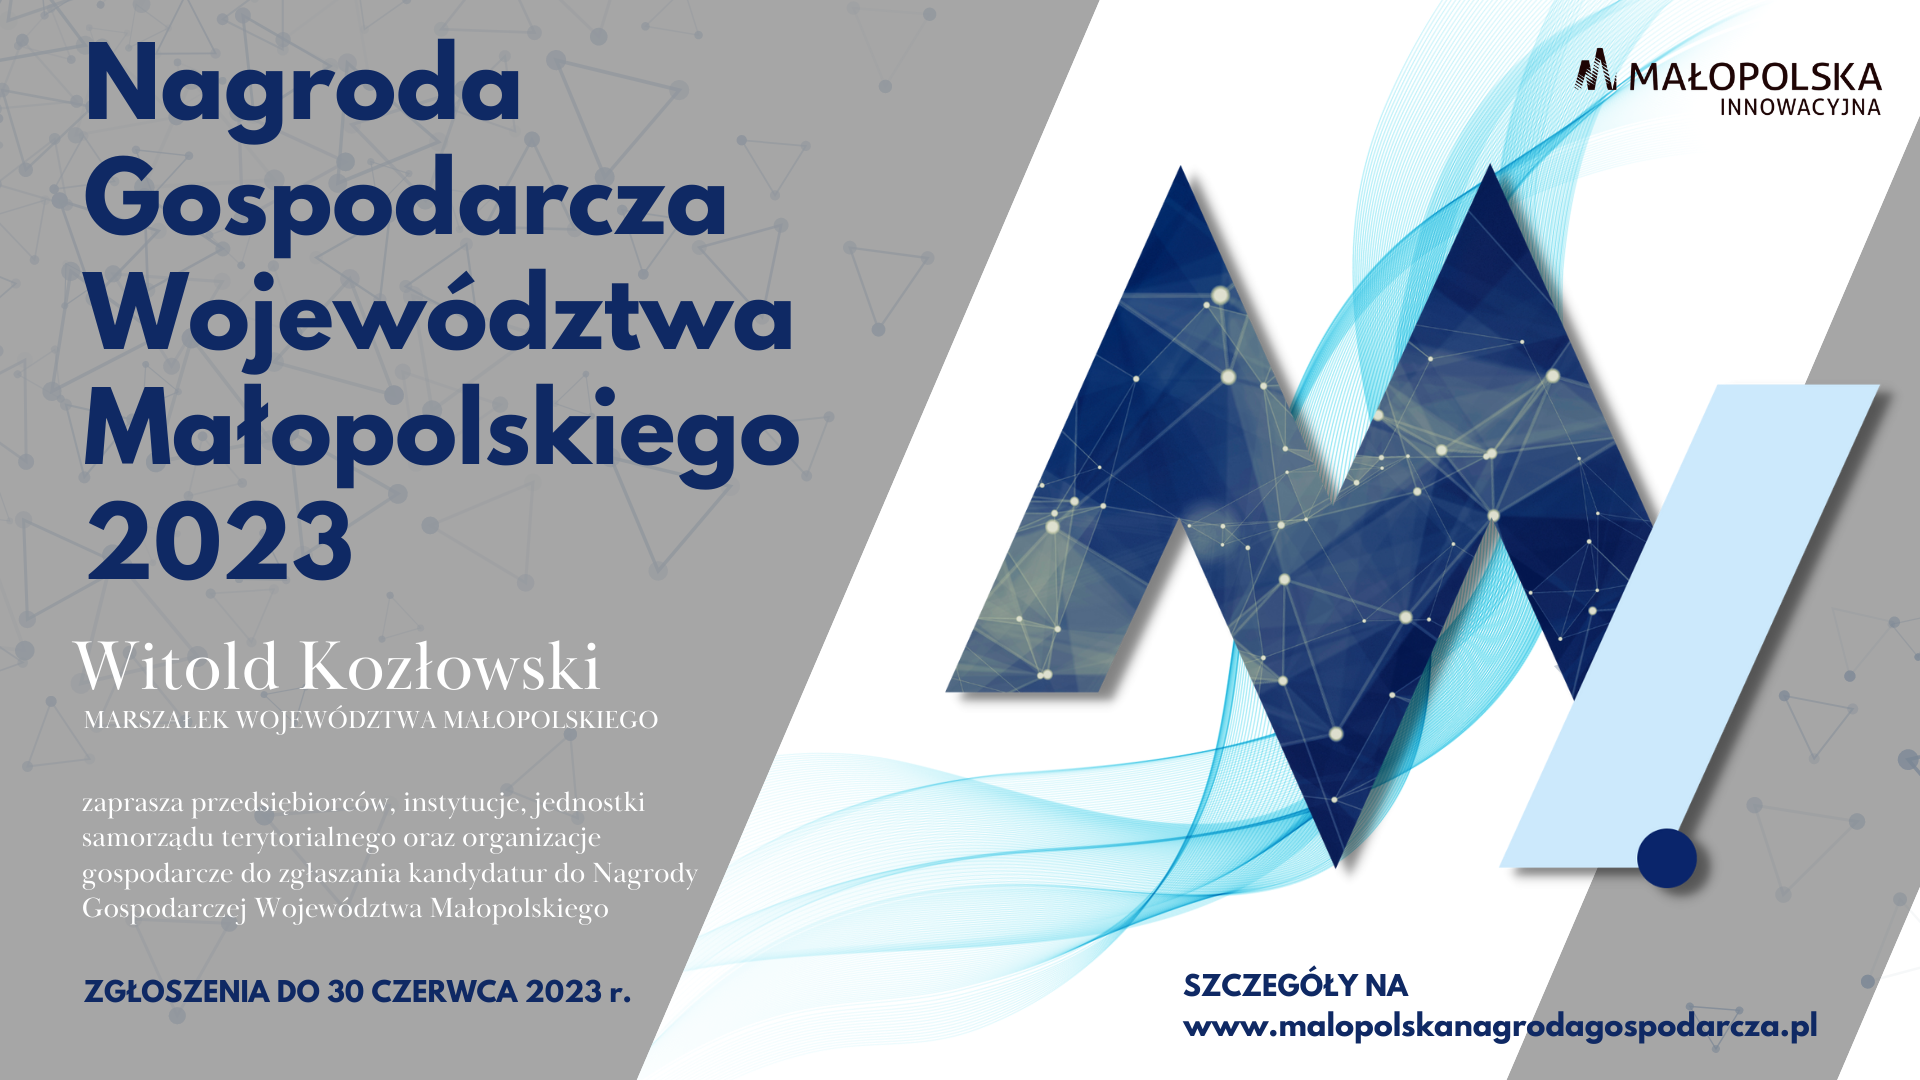 Nagroda Gospodarcza Województwa Małopolskiego 2023 - baner